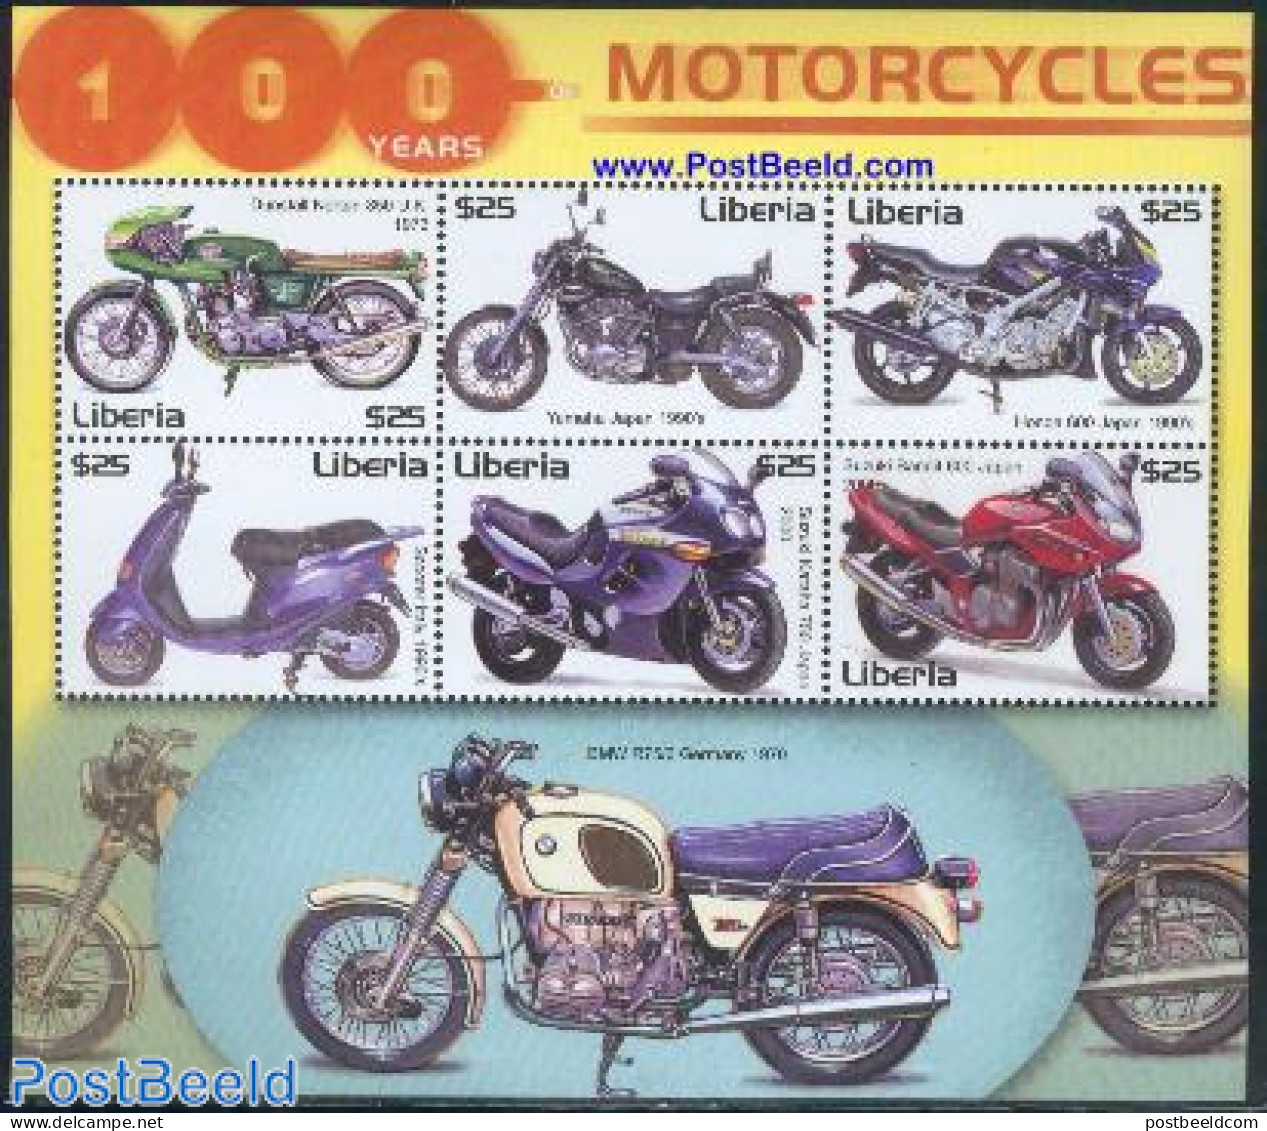 Liberia 2001 Motorcycles 6v M/s, Dunstall Norton 850, Mint NH, Transport - Motorcycles - Motorräder